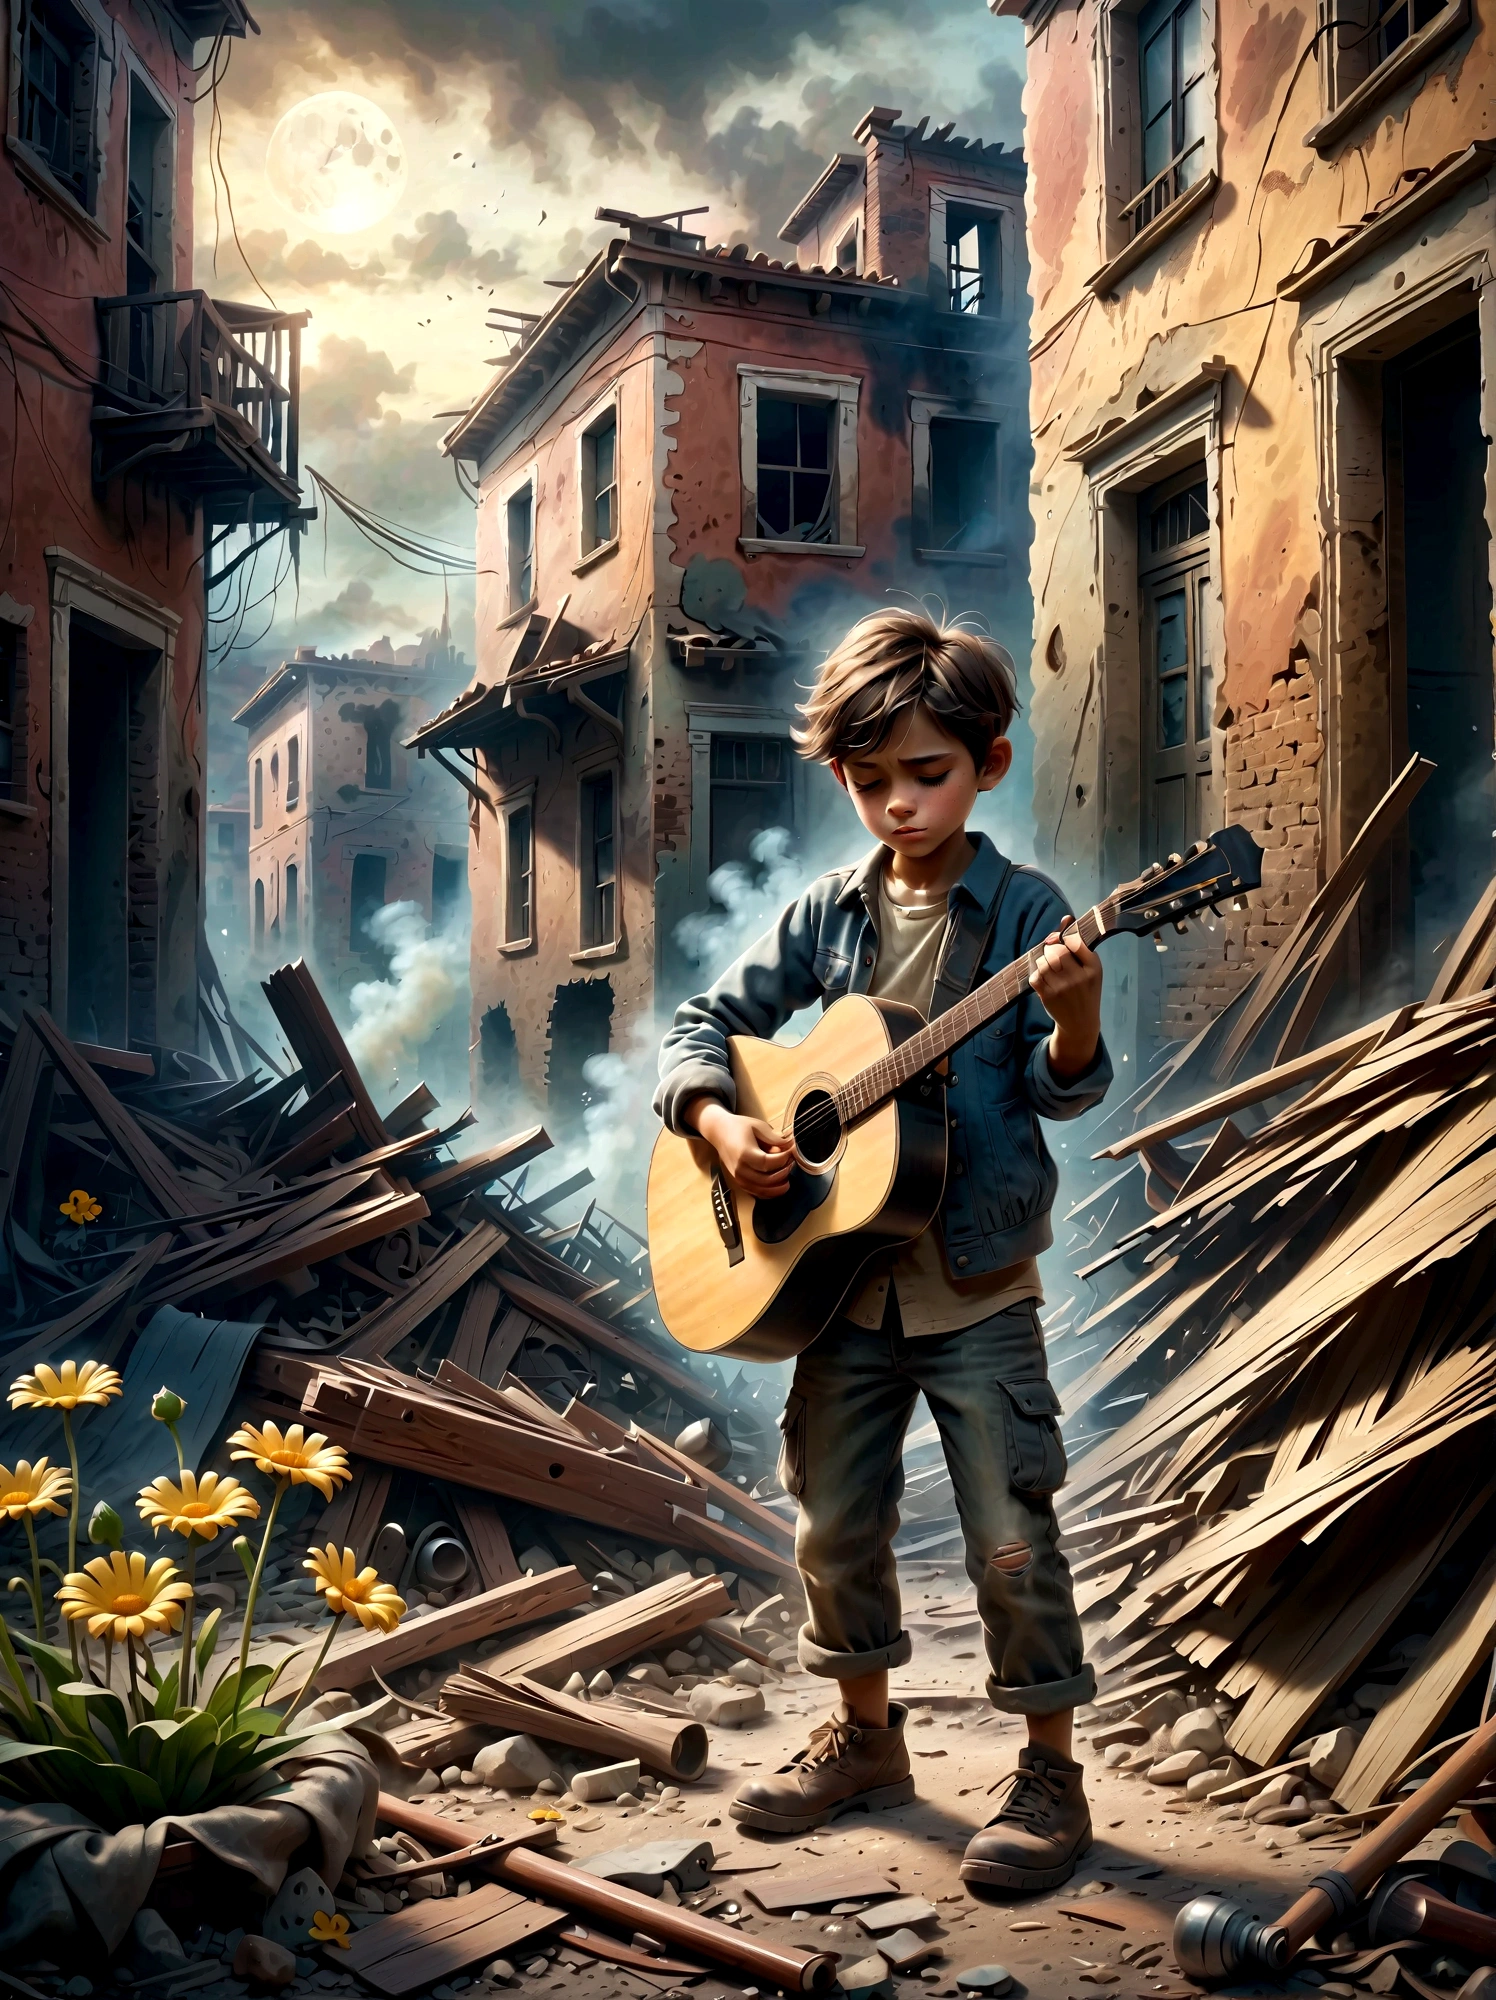 Посреди раздираемой войной, дымные руины, ребенок играет на гитаре, (У ребенка растет живучий цветочек&#39;ноги), Сцена демонстрирует резкий контраст между опустошением окружающей среды и невинностью людей. . Руины заполнены обломками и остатками построек., с дымом и огнем на заднем плане. Выражение лица ребенка мрачное, отражающее суровую реальность ситуации. Общее настроение острое и эмоциональное., с приглушенными цветами и драматическим освещением, чтобы подчеркнуть отчаяние и проблеск надежды, представленные музыкой..